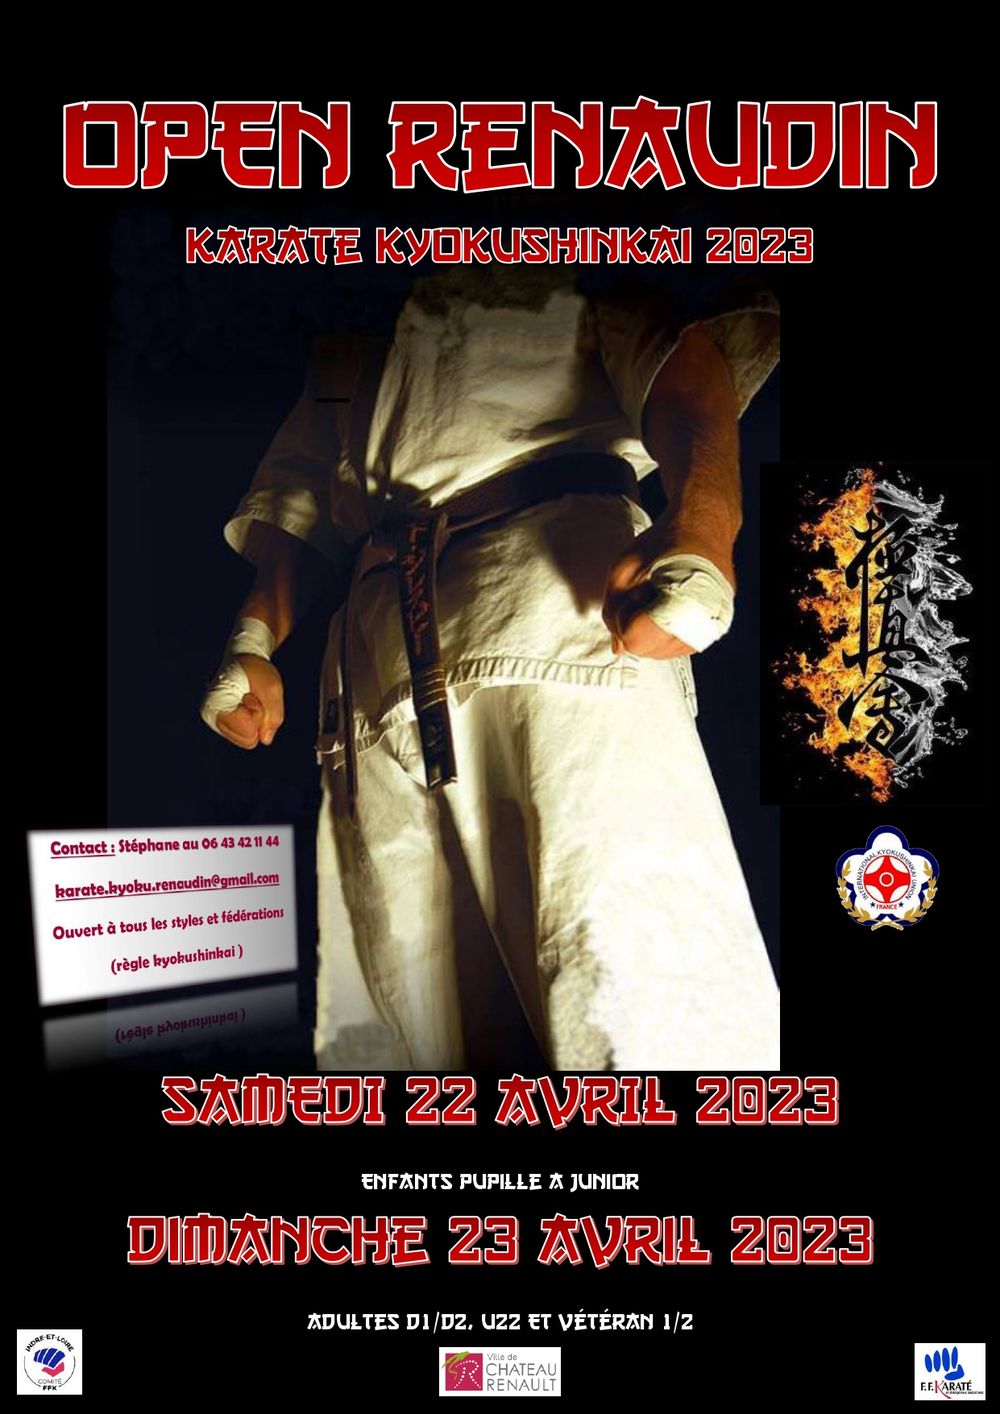 Open Renaudin, tournoi de karaté kyokushinkai